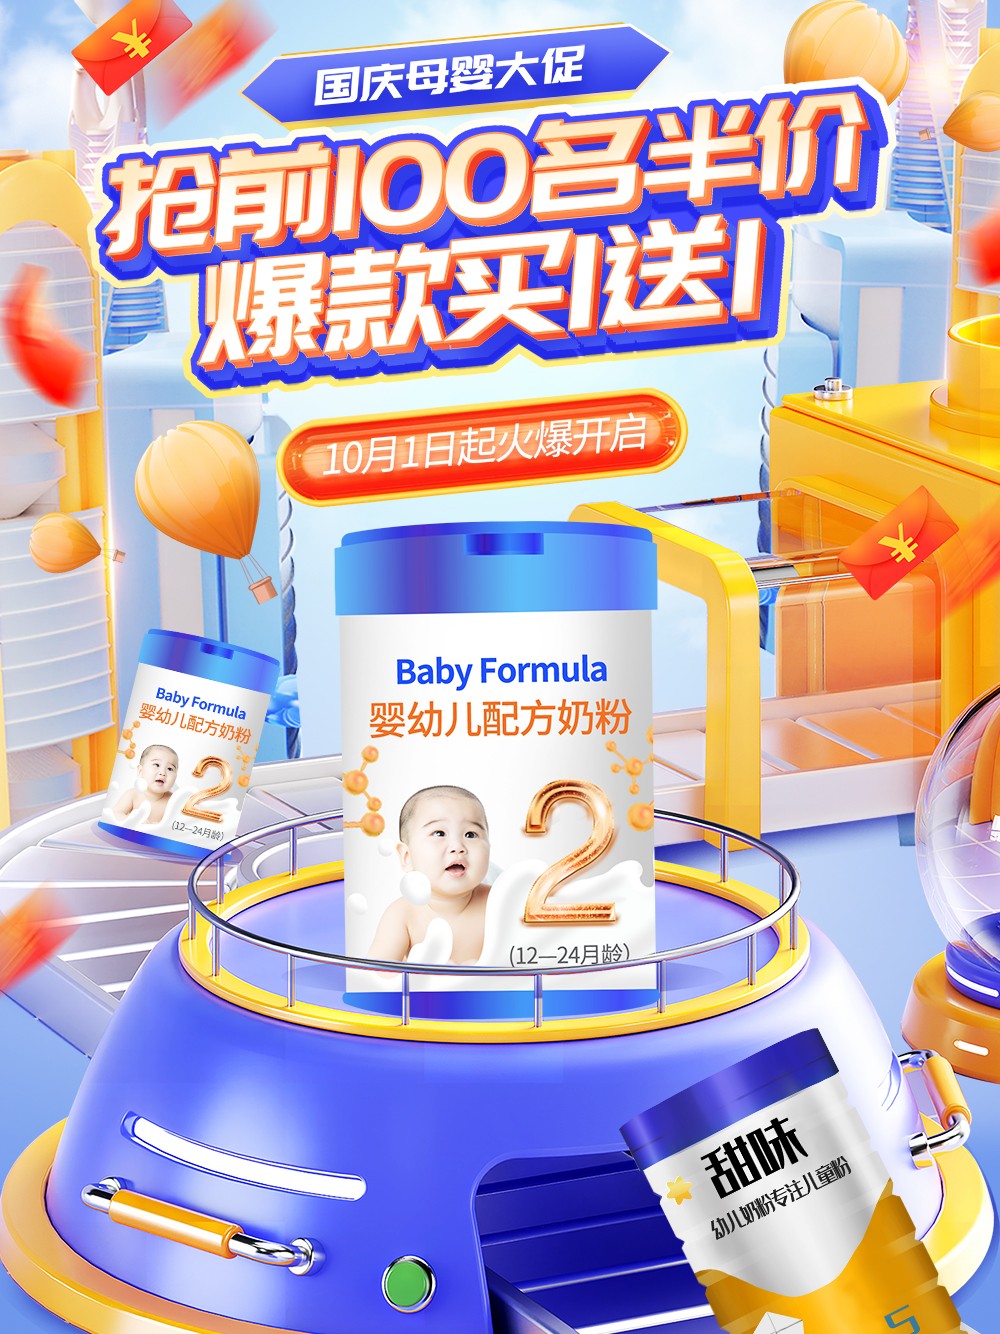 国庆节母婴大促电商海报